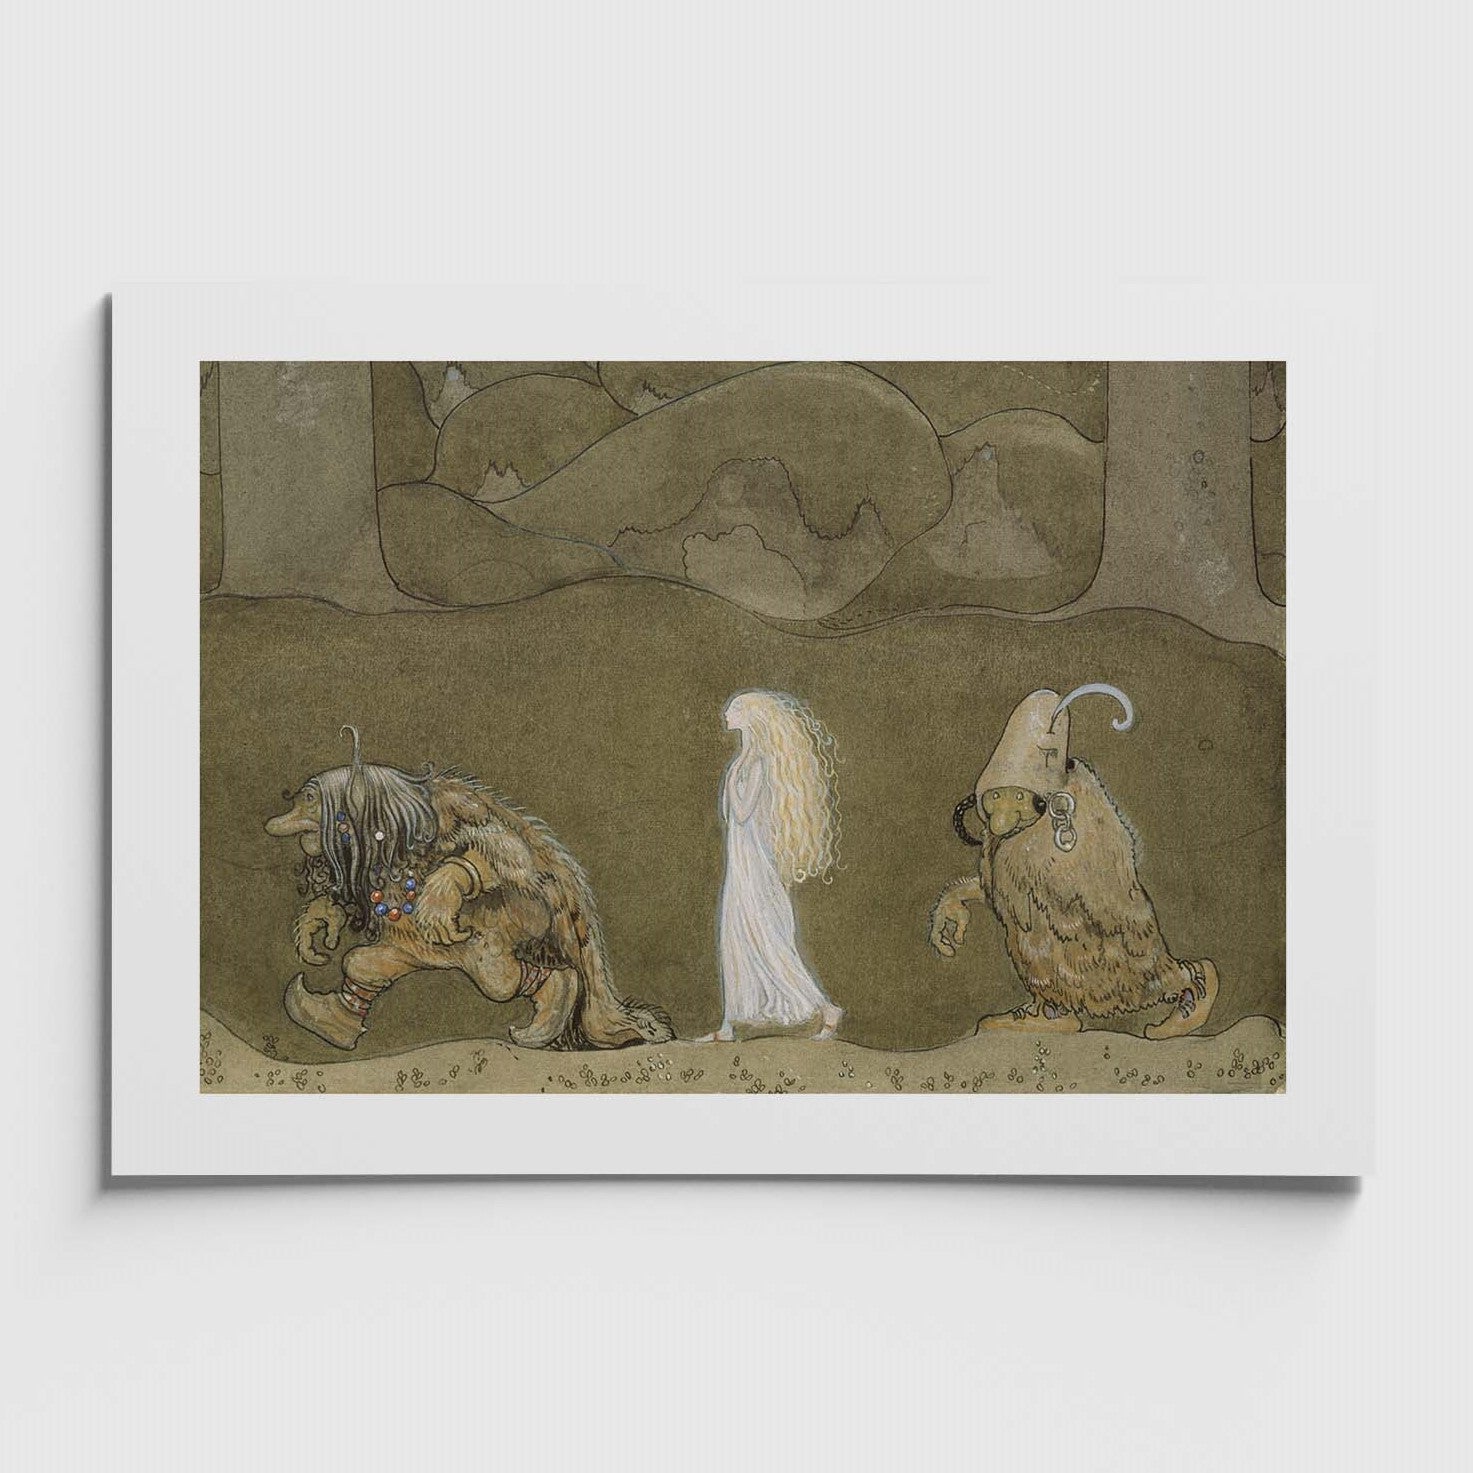 affisch med John Bauers målning Prinsessan och trollen från Nationalmuseums samlingar